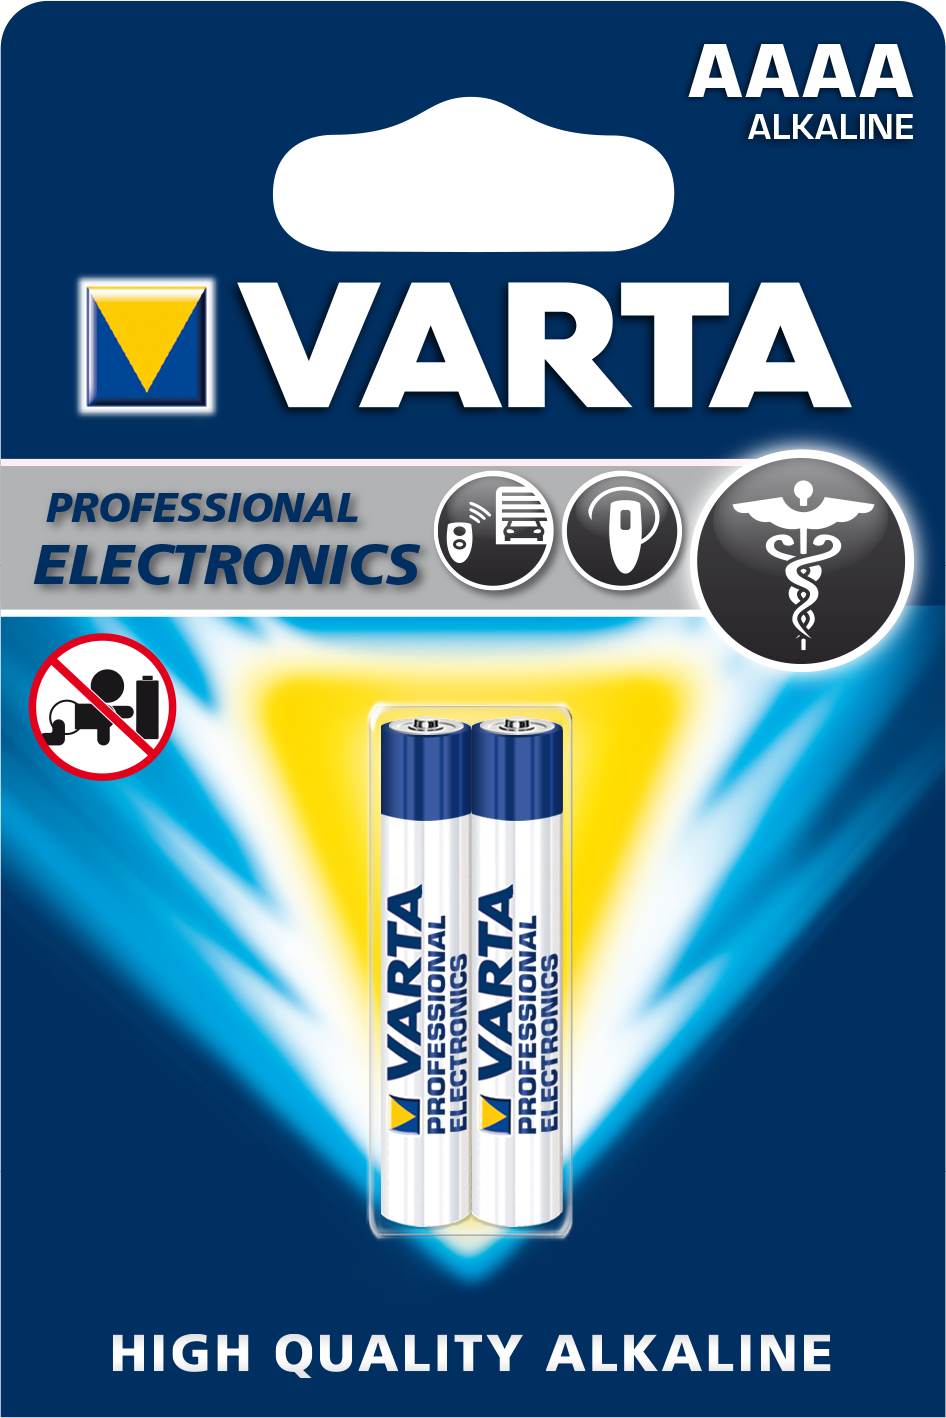 Batteri AAAA/LR8 Electronics